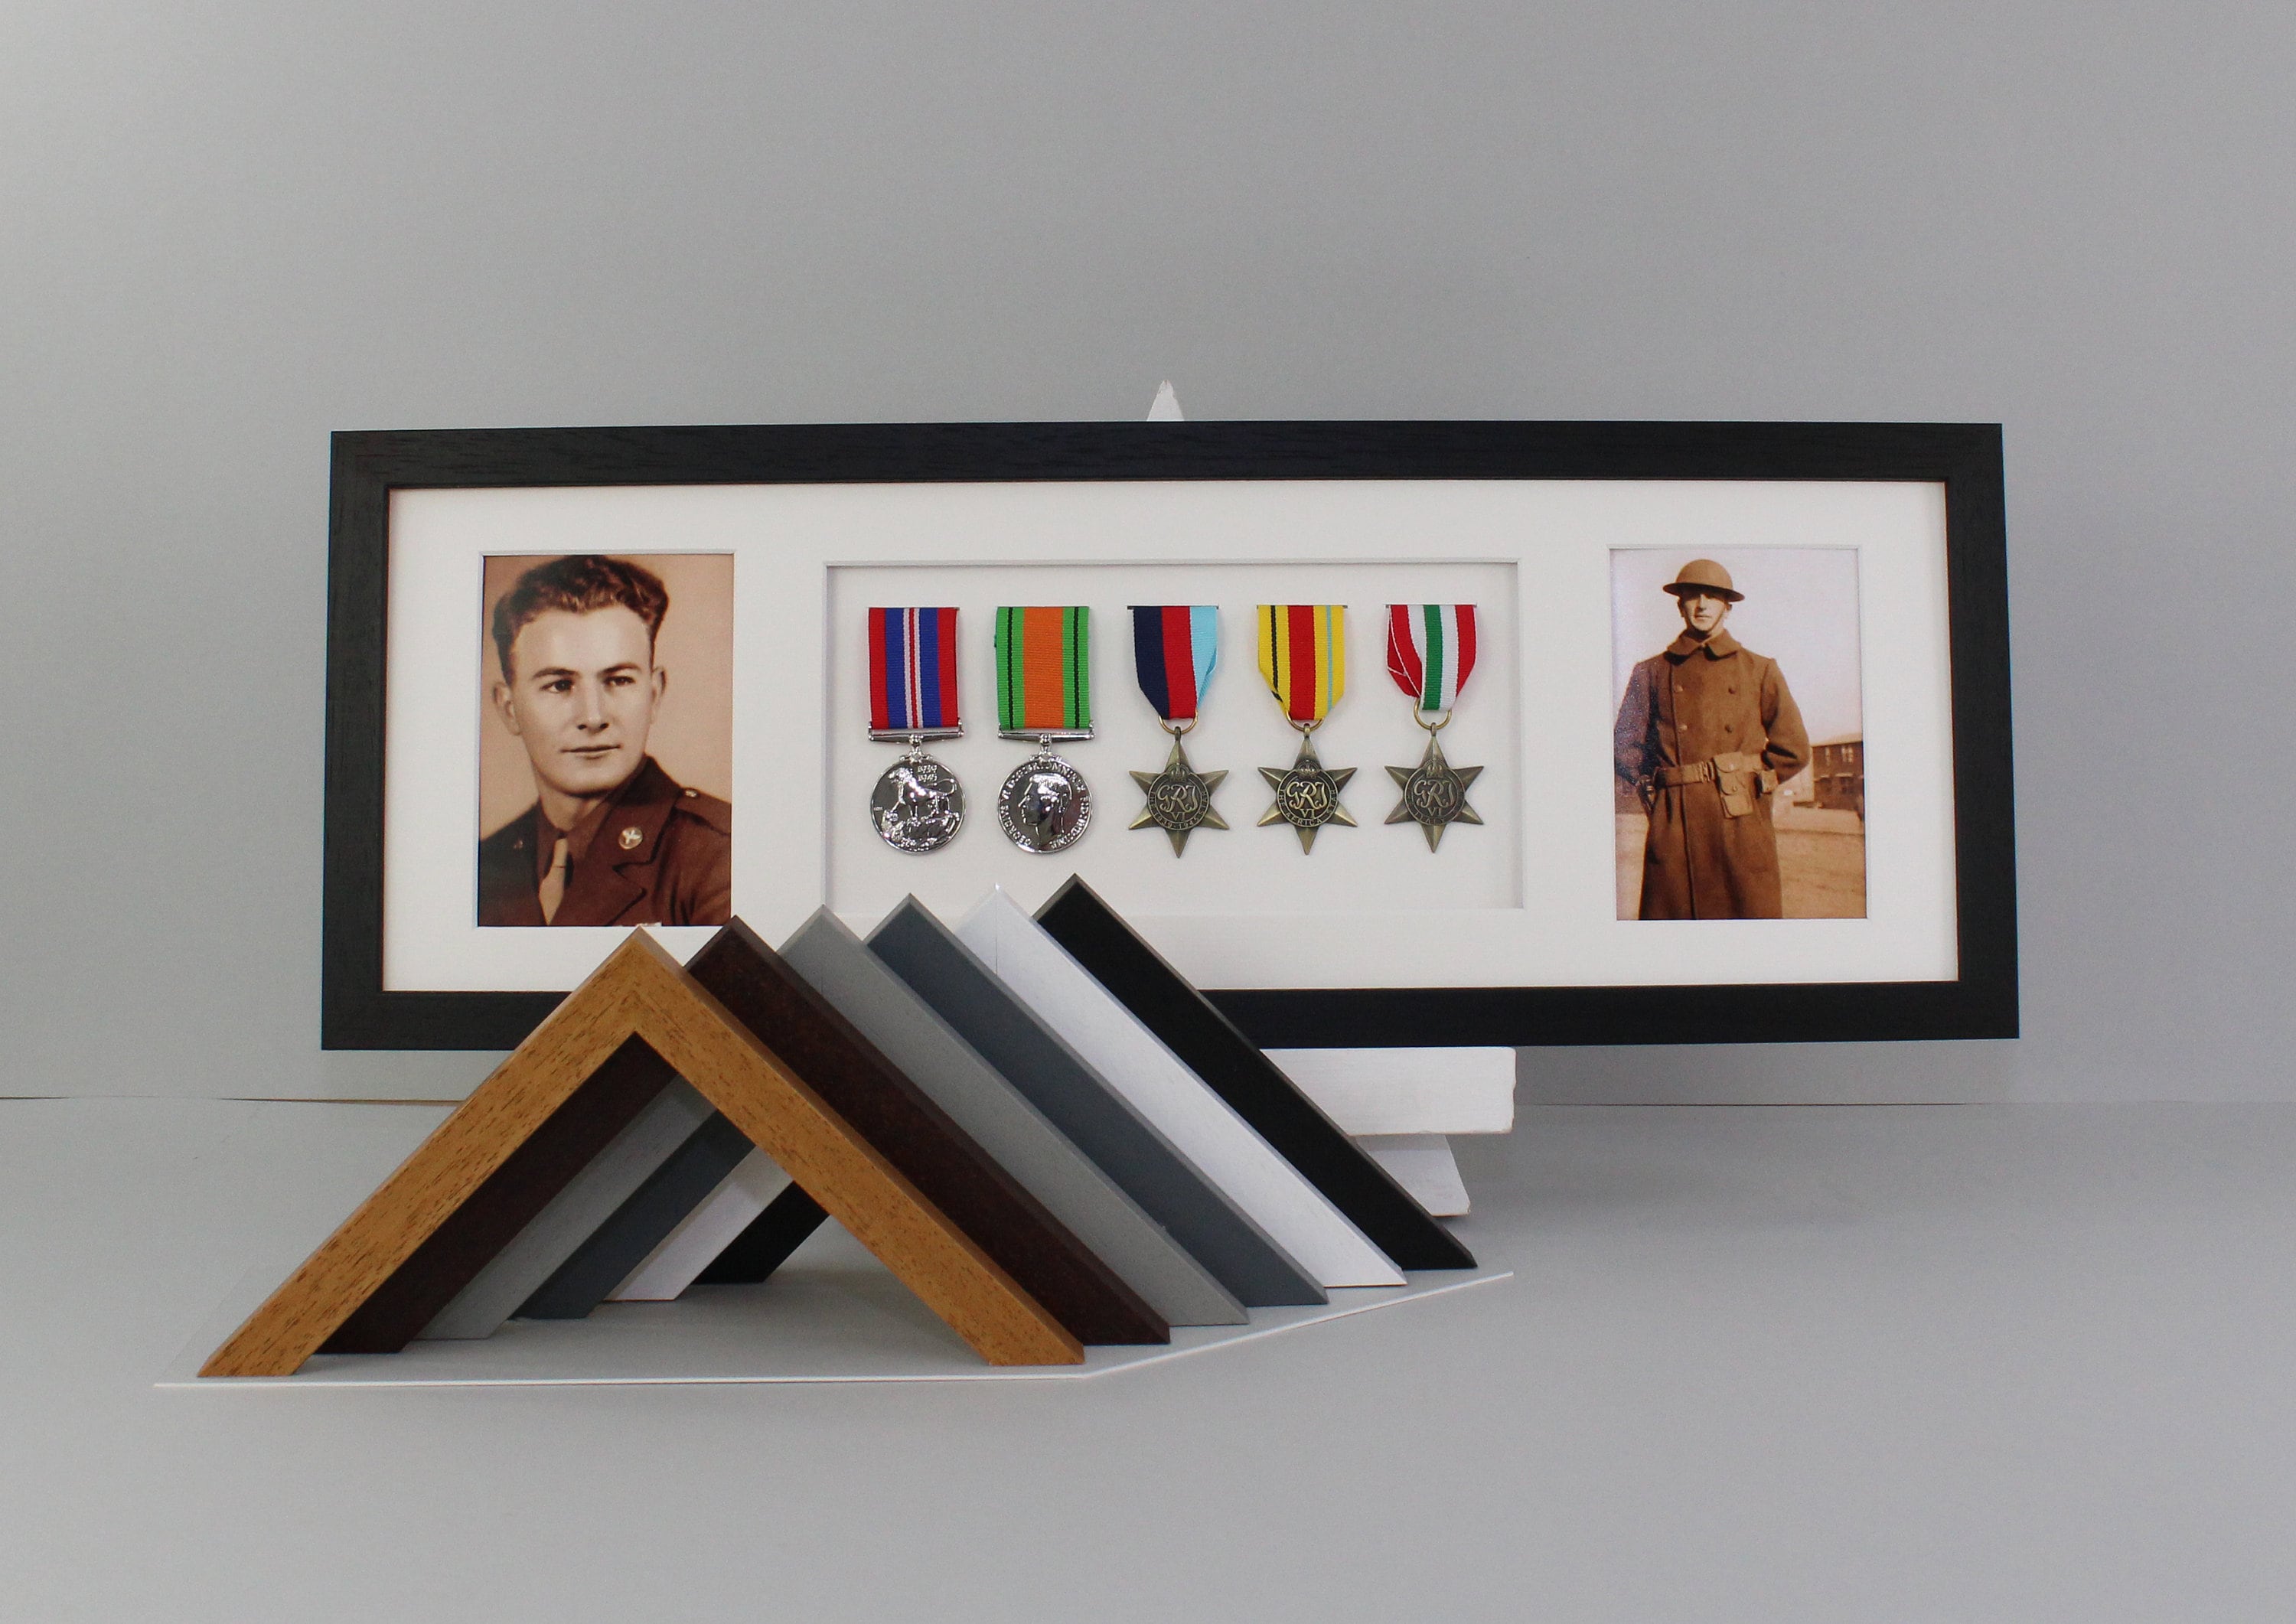 Cadre daffichage de médaille de guerre pour WW1 WW2 médaille militaire de  la guerre mondiale, choix de 6 cadres avec monture noire pour 3 médailles  dans un cadre. -  France